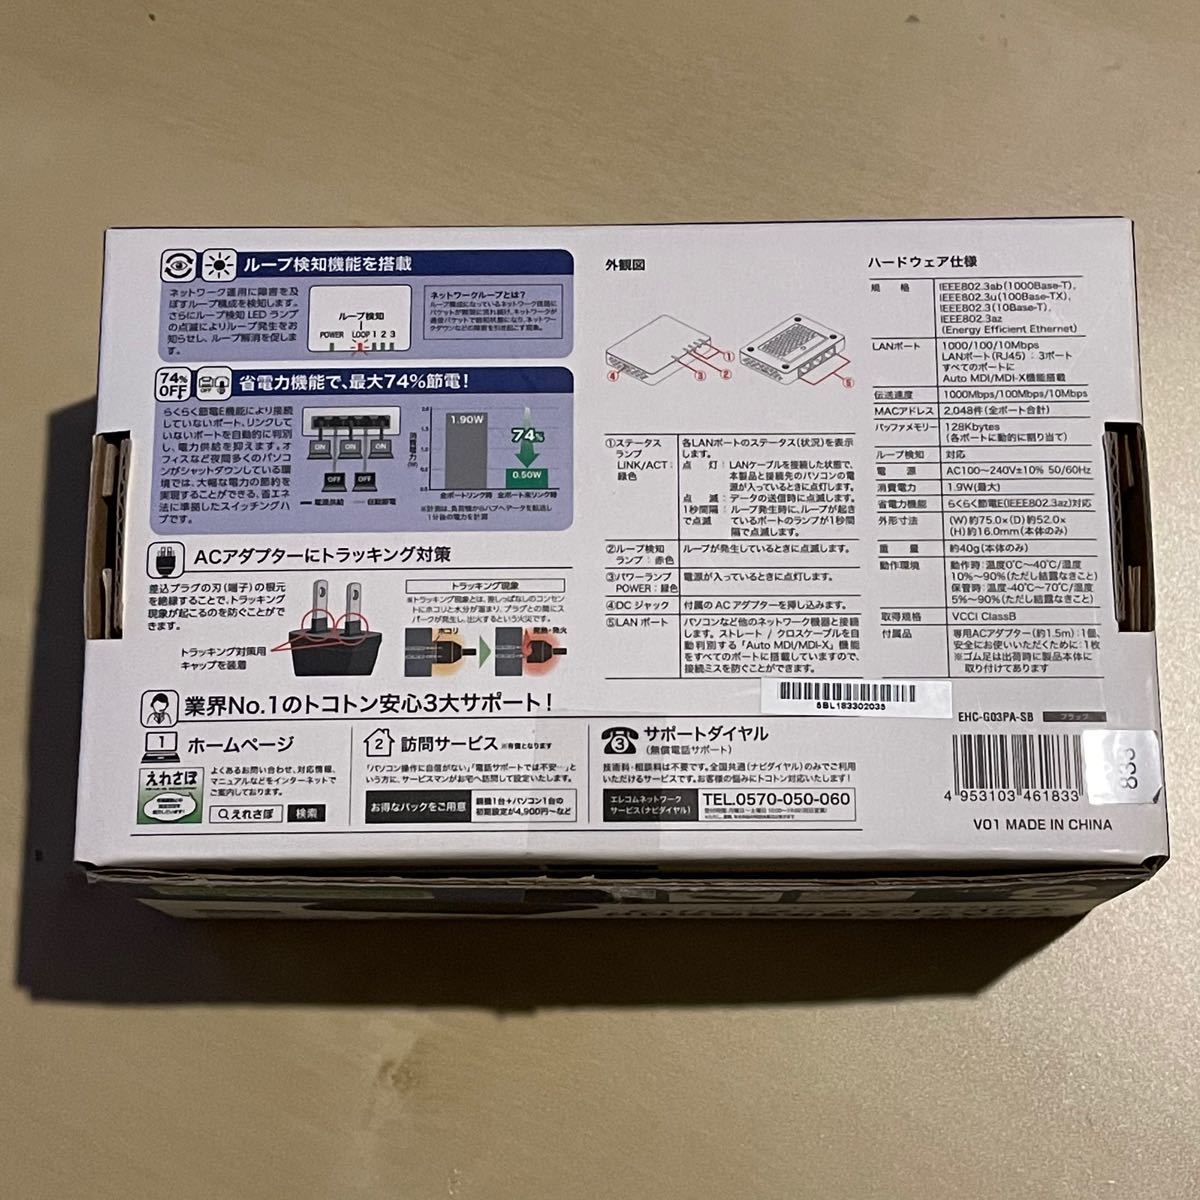 エレコム EHC-G03PA-SB ギガビットスイッチングハブ カードサイズ